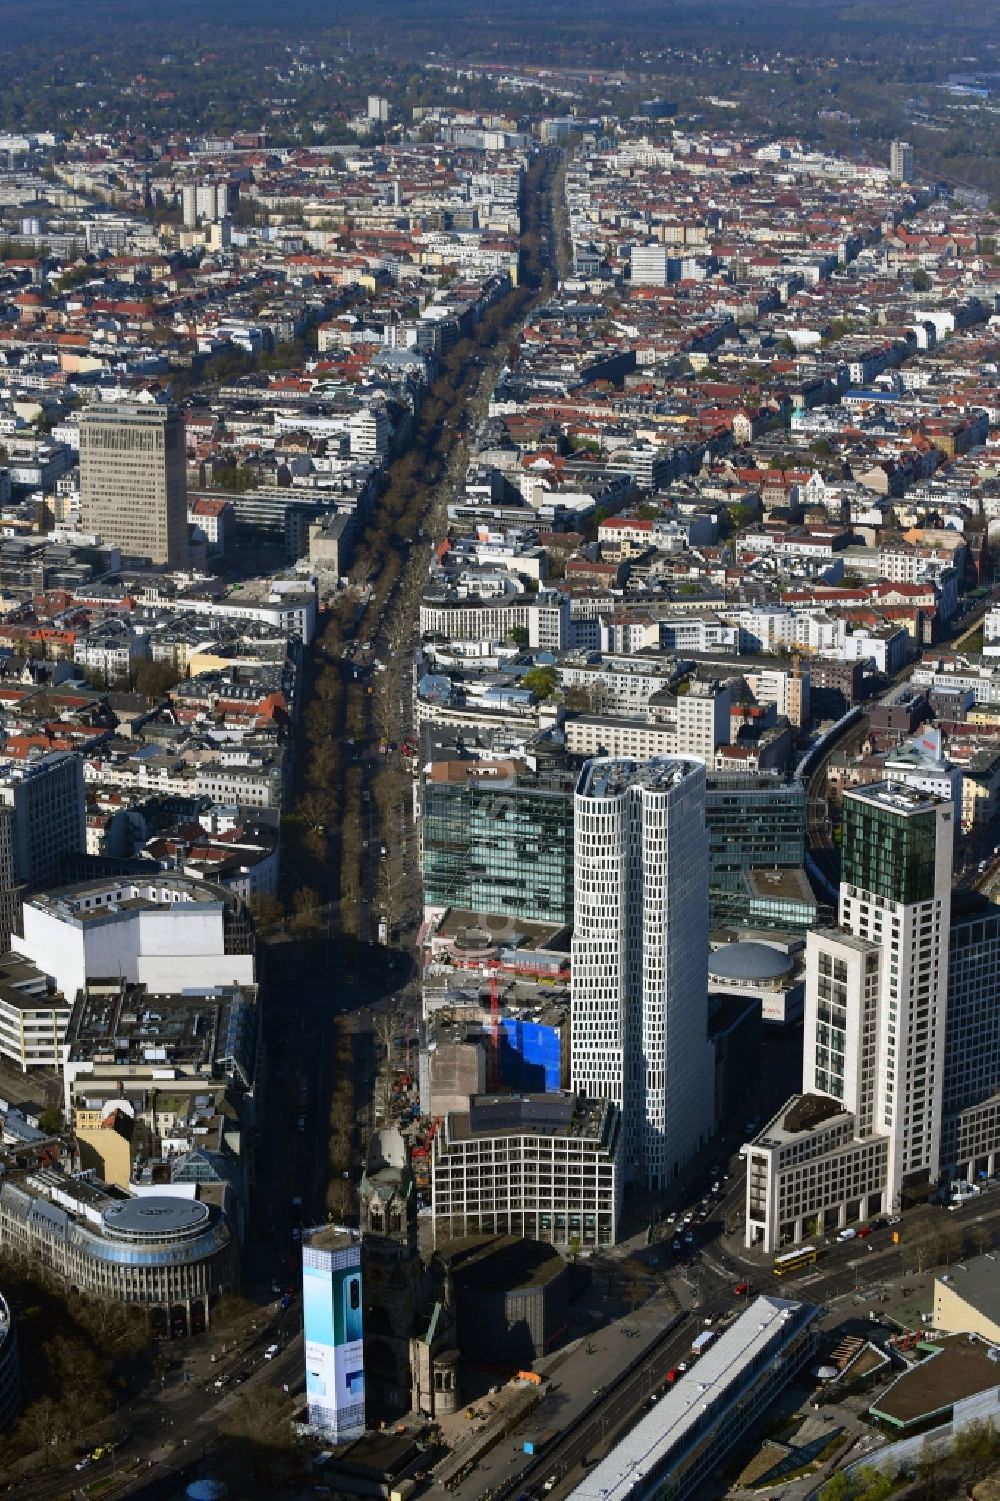 Luftaufnahme Berlin - Straßenführung der bekannten Flaniermeile und Einkaufsstraße Kudamm - Kurfürstendamm im Ortsteil Charlottenburg in Berlin, Deutschland